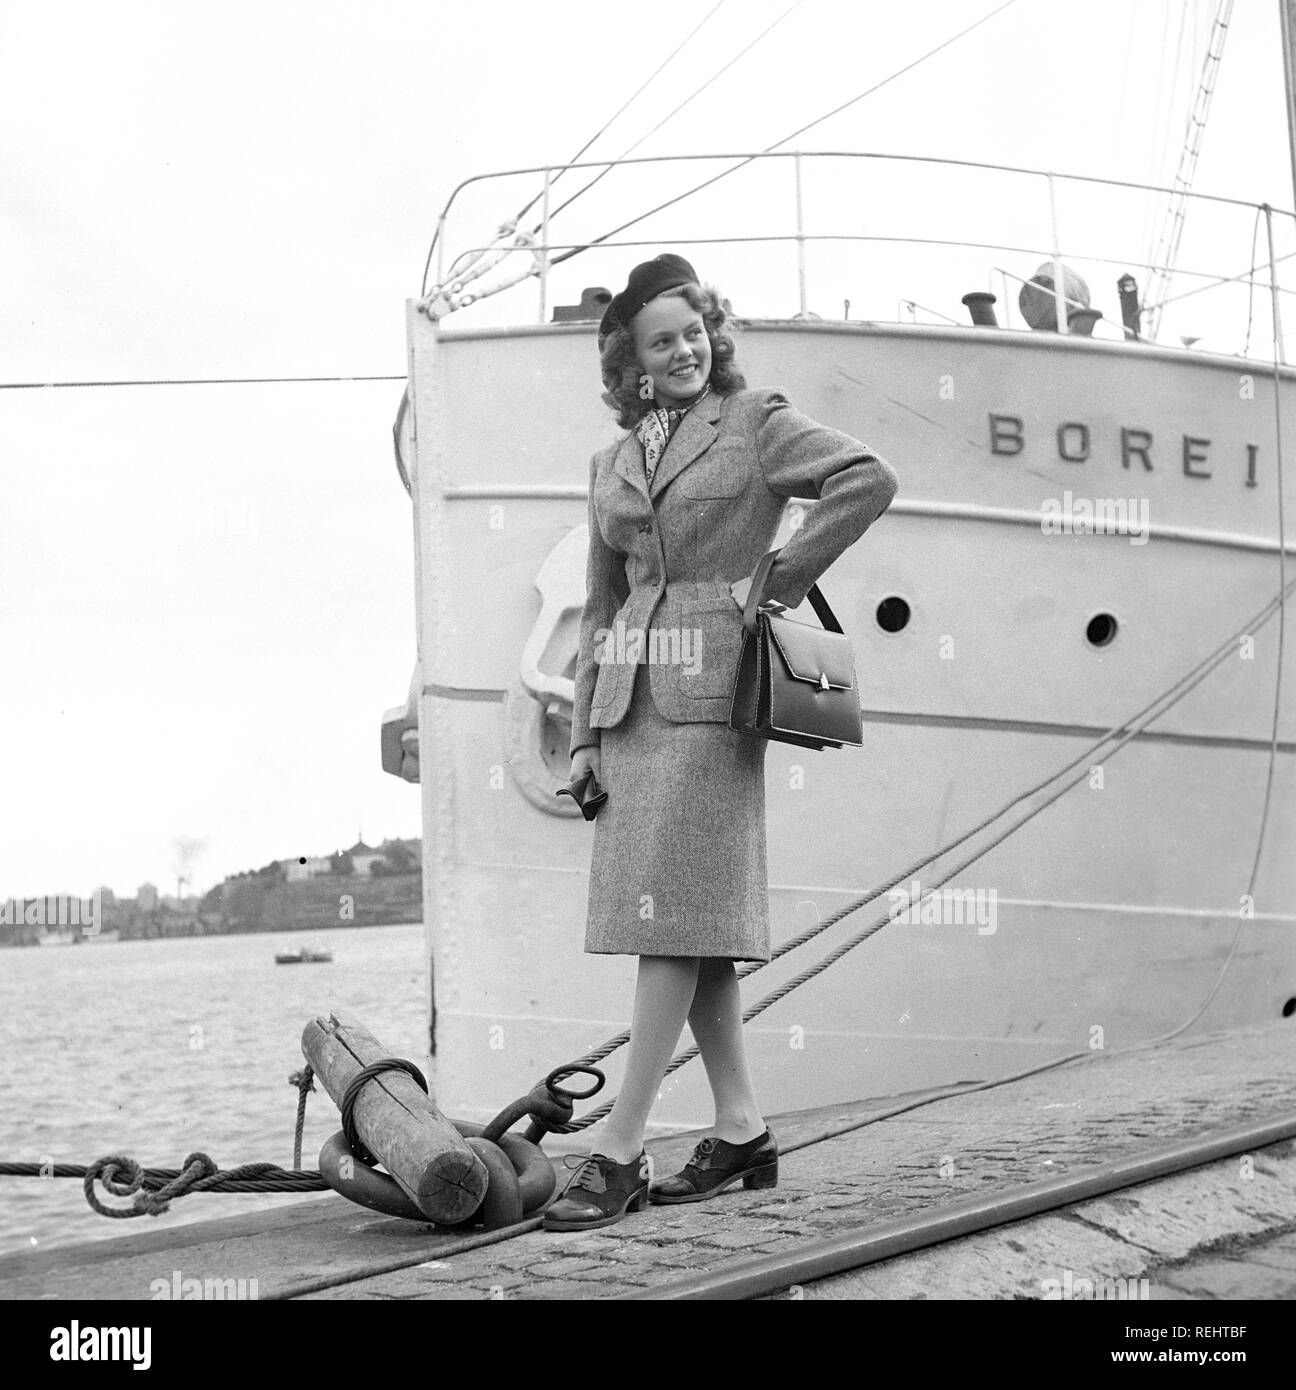 La mode féminine dans les années 40. Une jeune femme dans une typique des  années 40, veste et jupe, avec chapeau assorti, chaussures, gants et sac à  main. Kristoffersson Photo Ref V77-4.